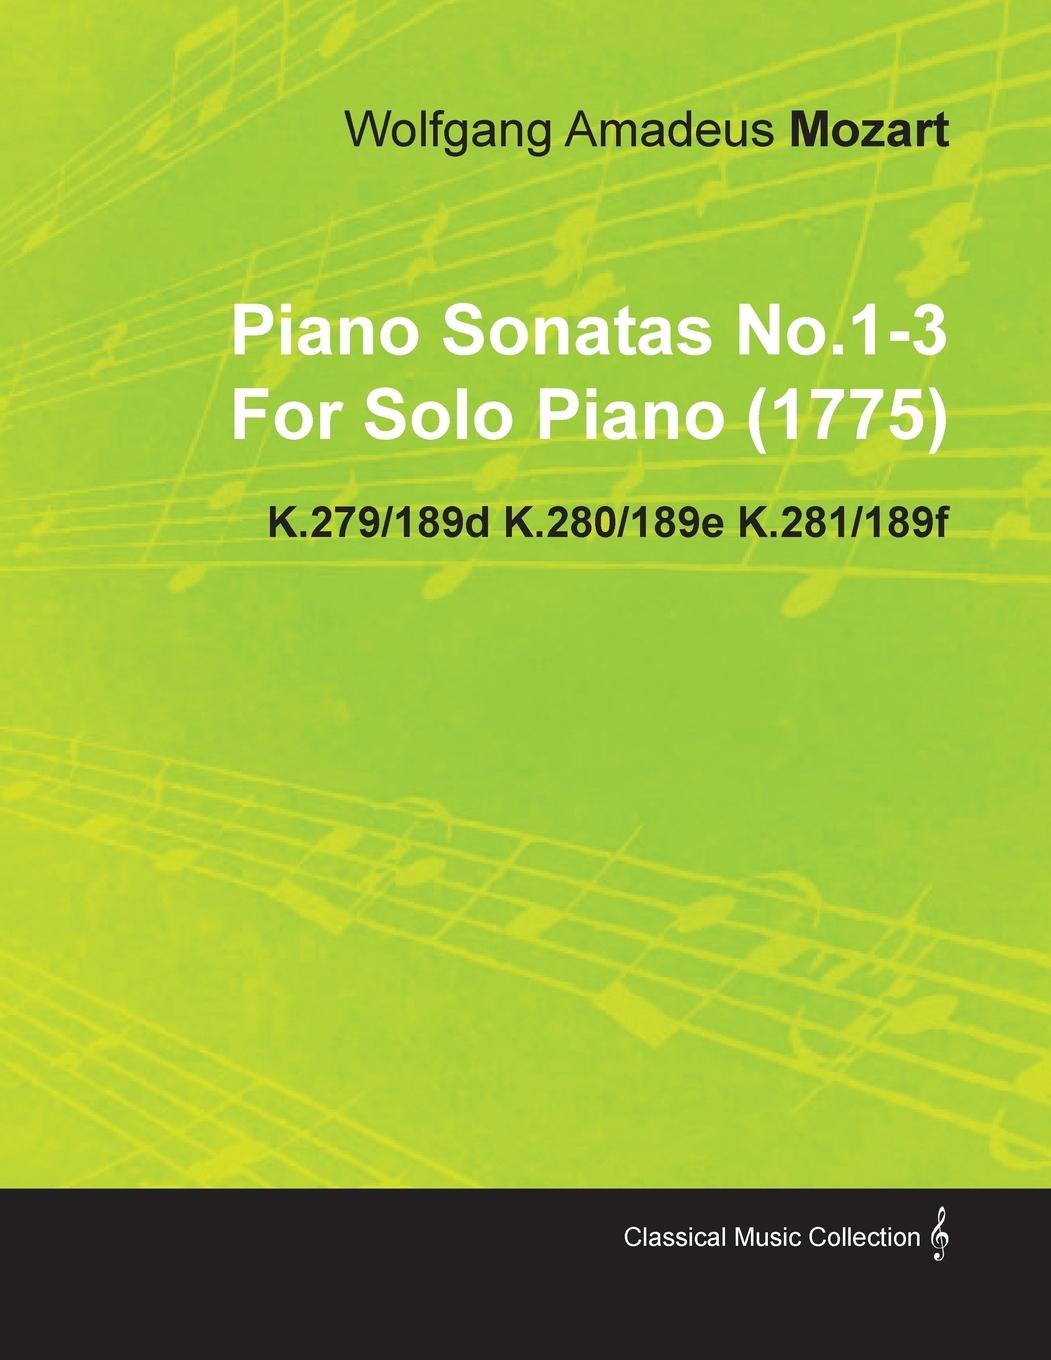 Piano Sonatas No.1-3 by Wolfgang Amadeus Mozart for Solo Piano (1775) K.279/189d K.280/189e K.281/189f - Mozart, Wolfgang Amadeus